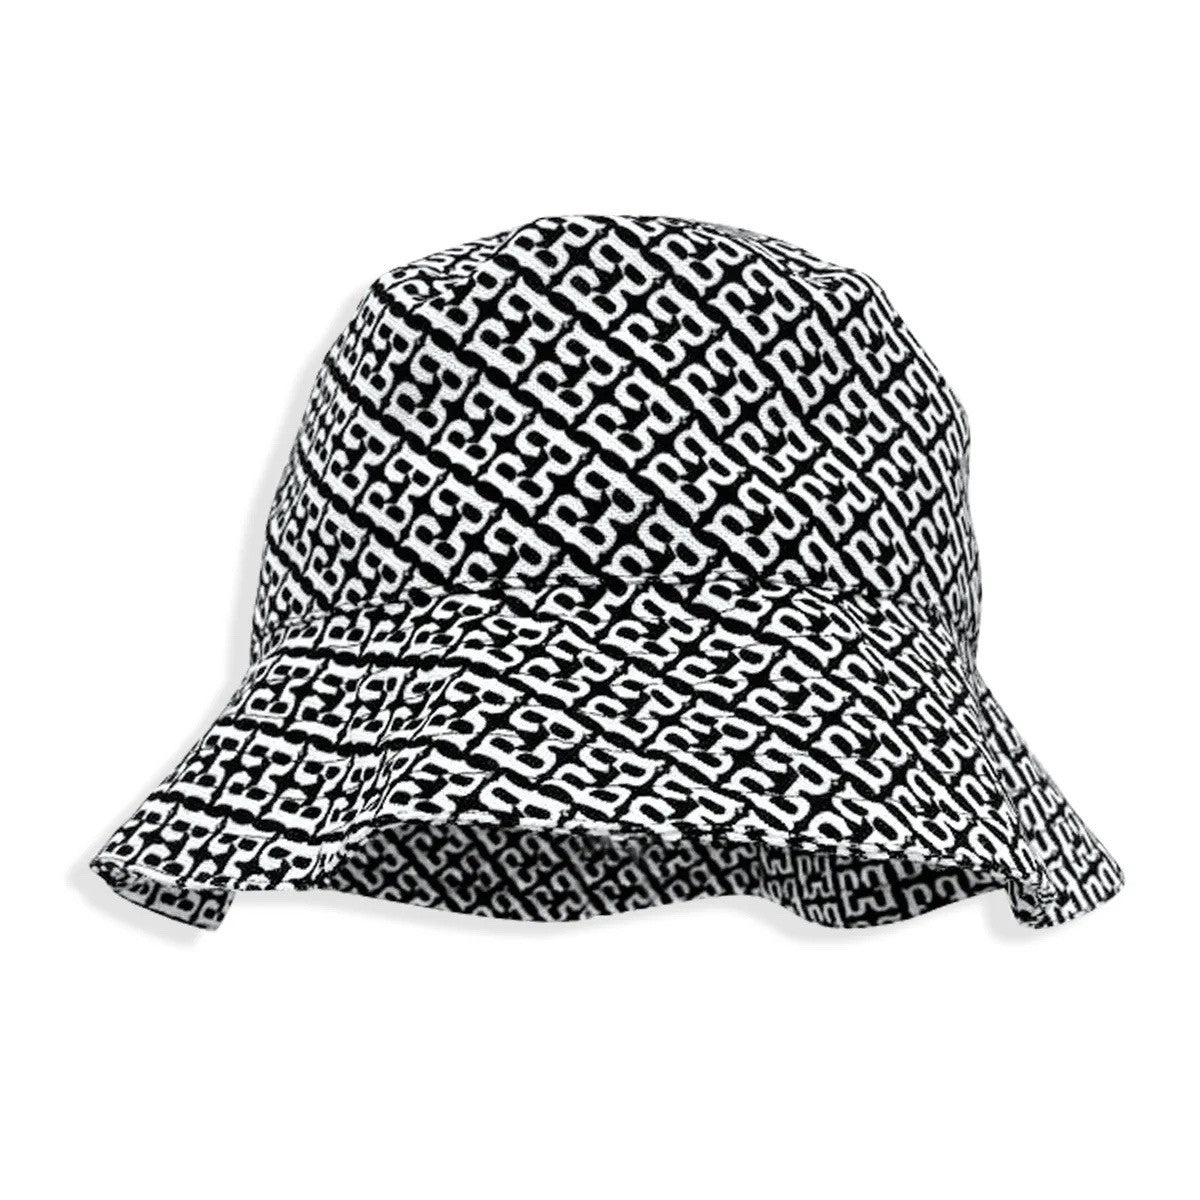 Black & White Barrier Breaker Unisex Bucket Hat